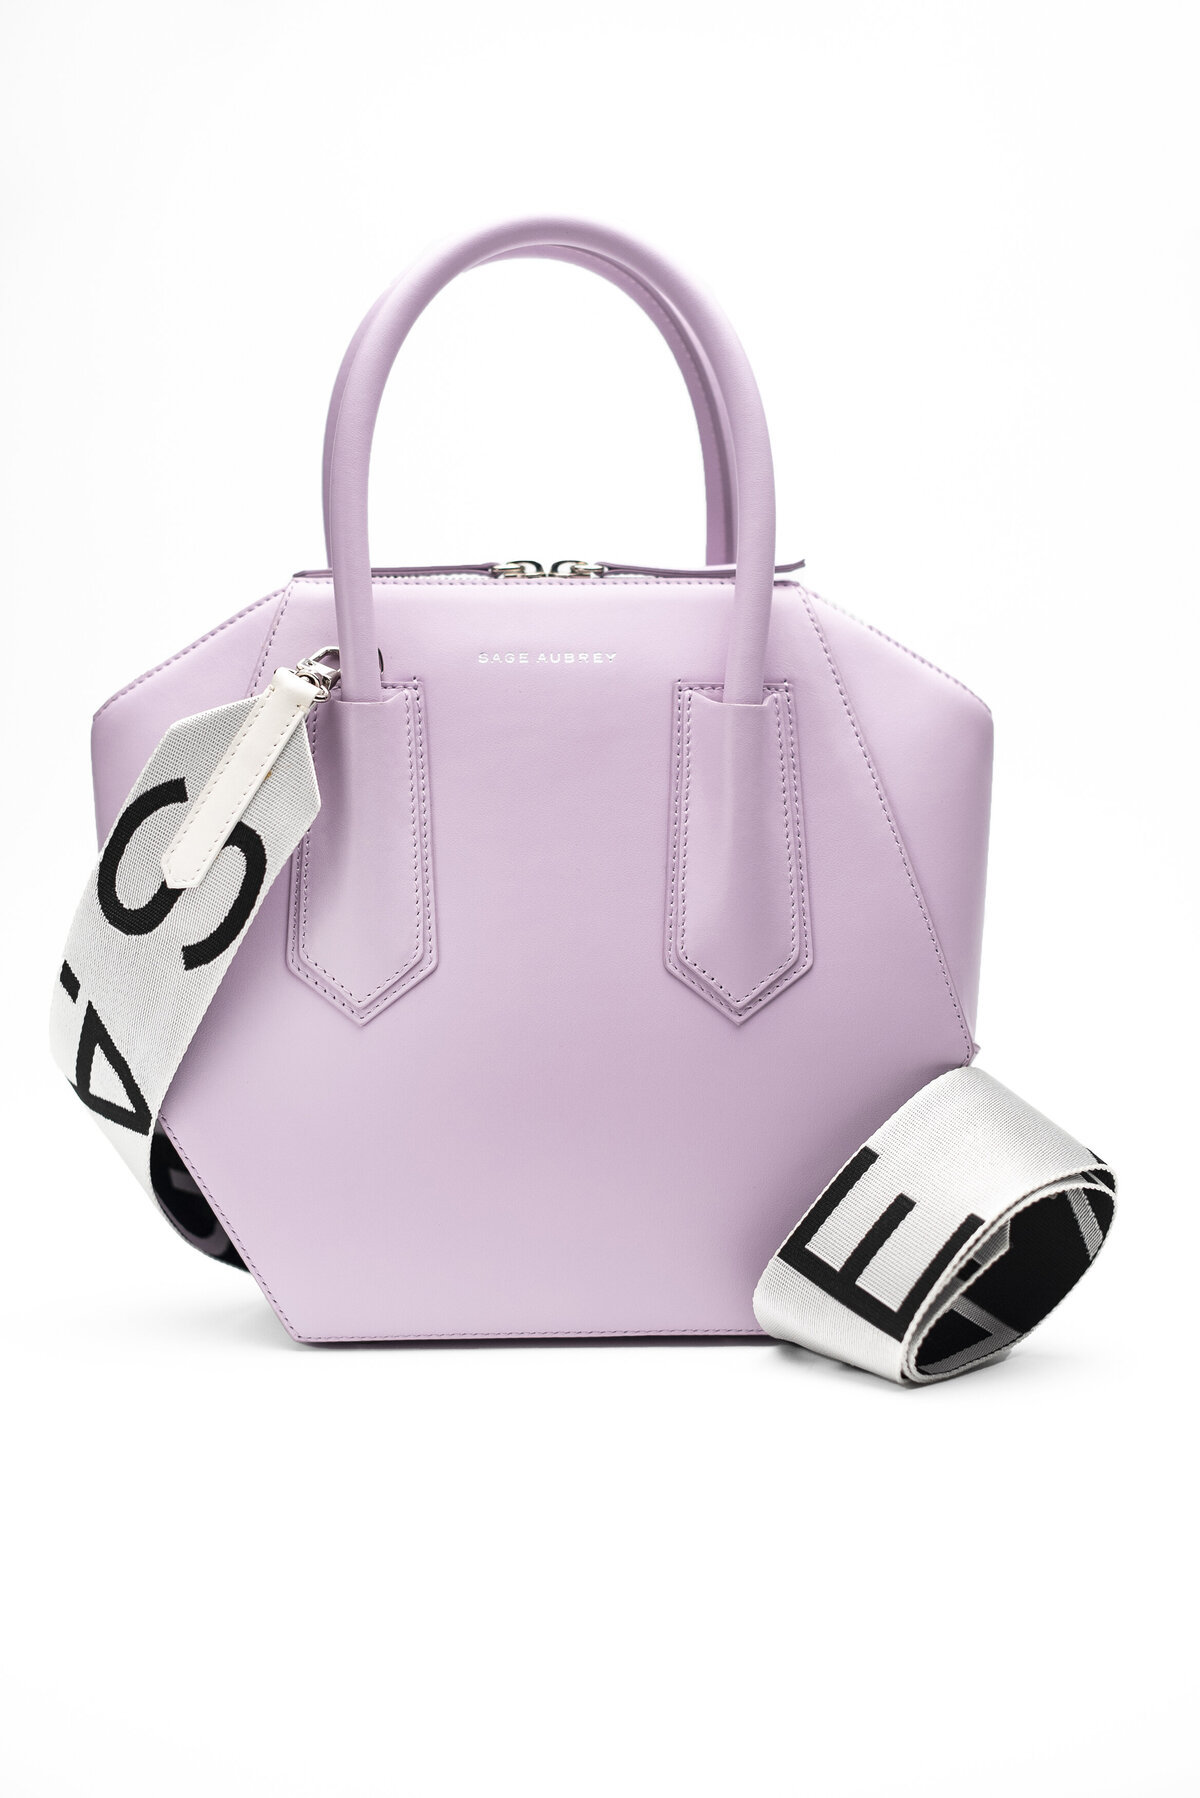 Sage Aubry geometric leather purse in Purple